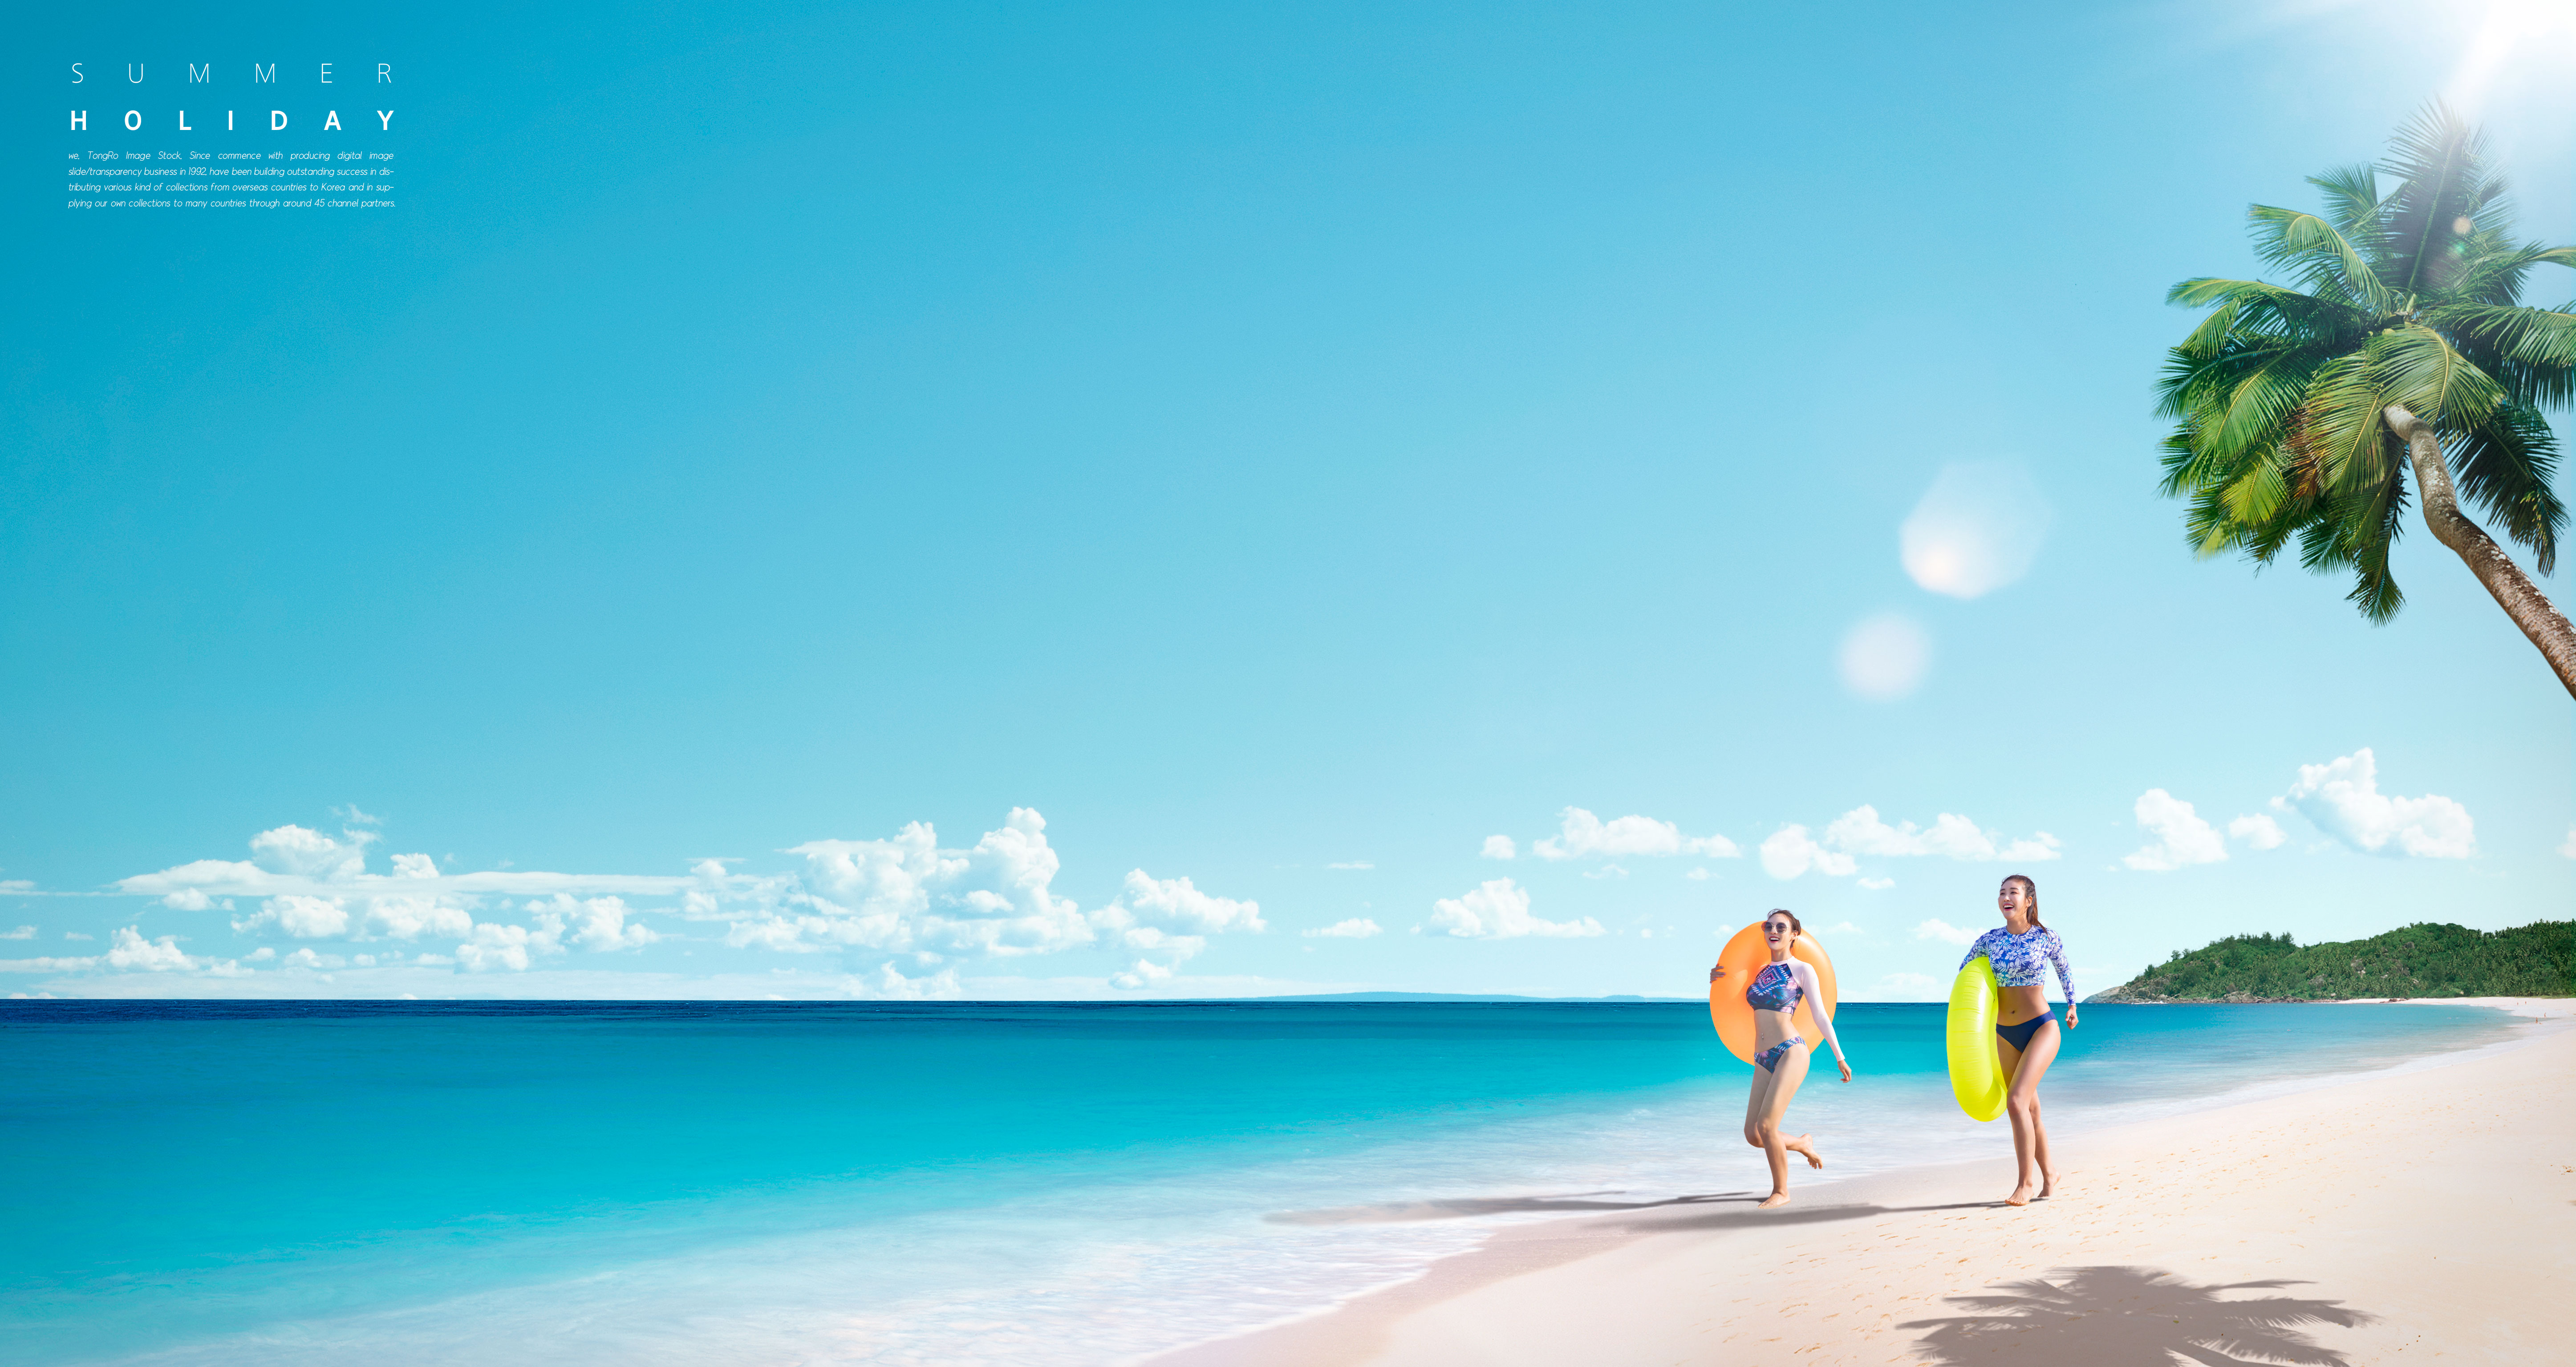 夏季海滩旅行度假活动广告海报模板套装[PSD]插图(1)